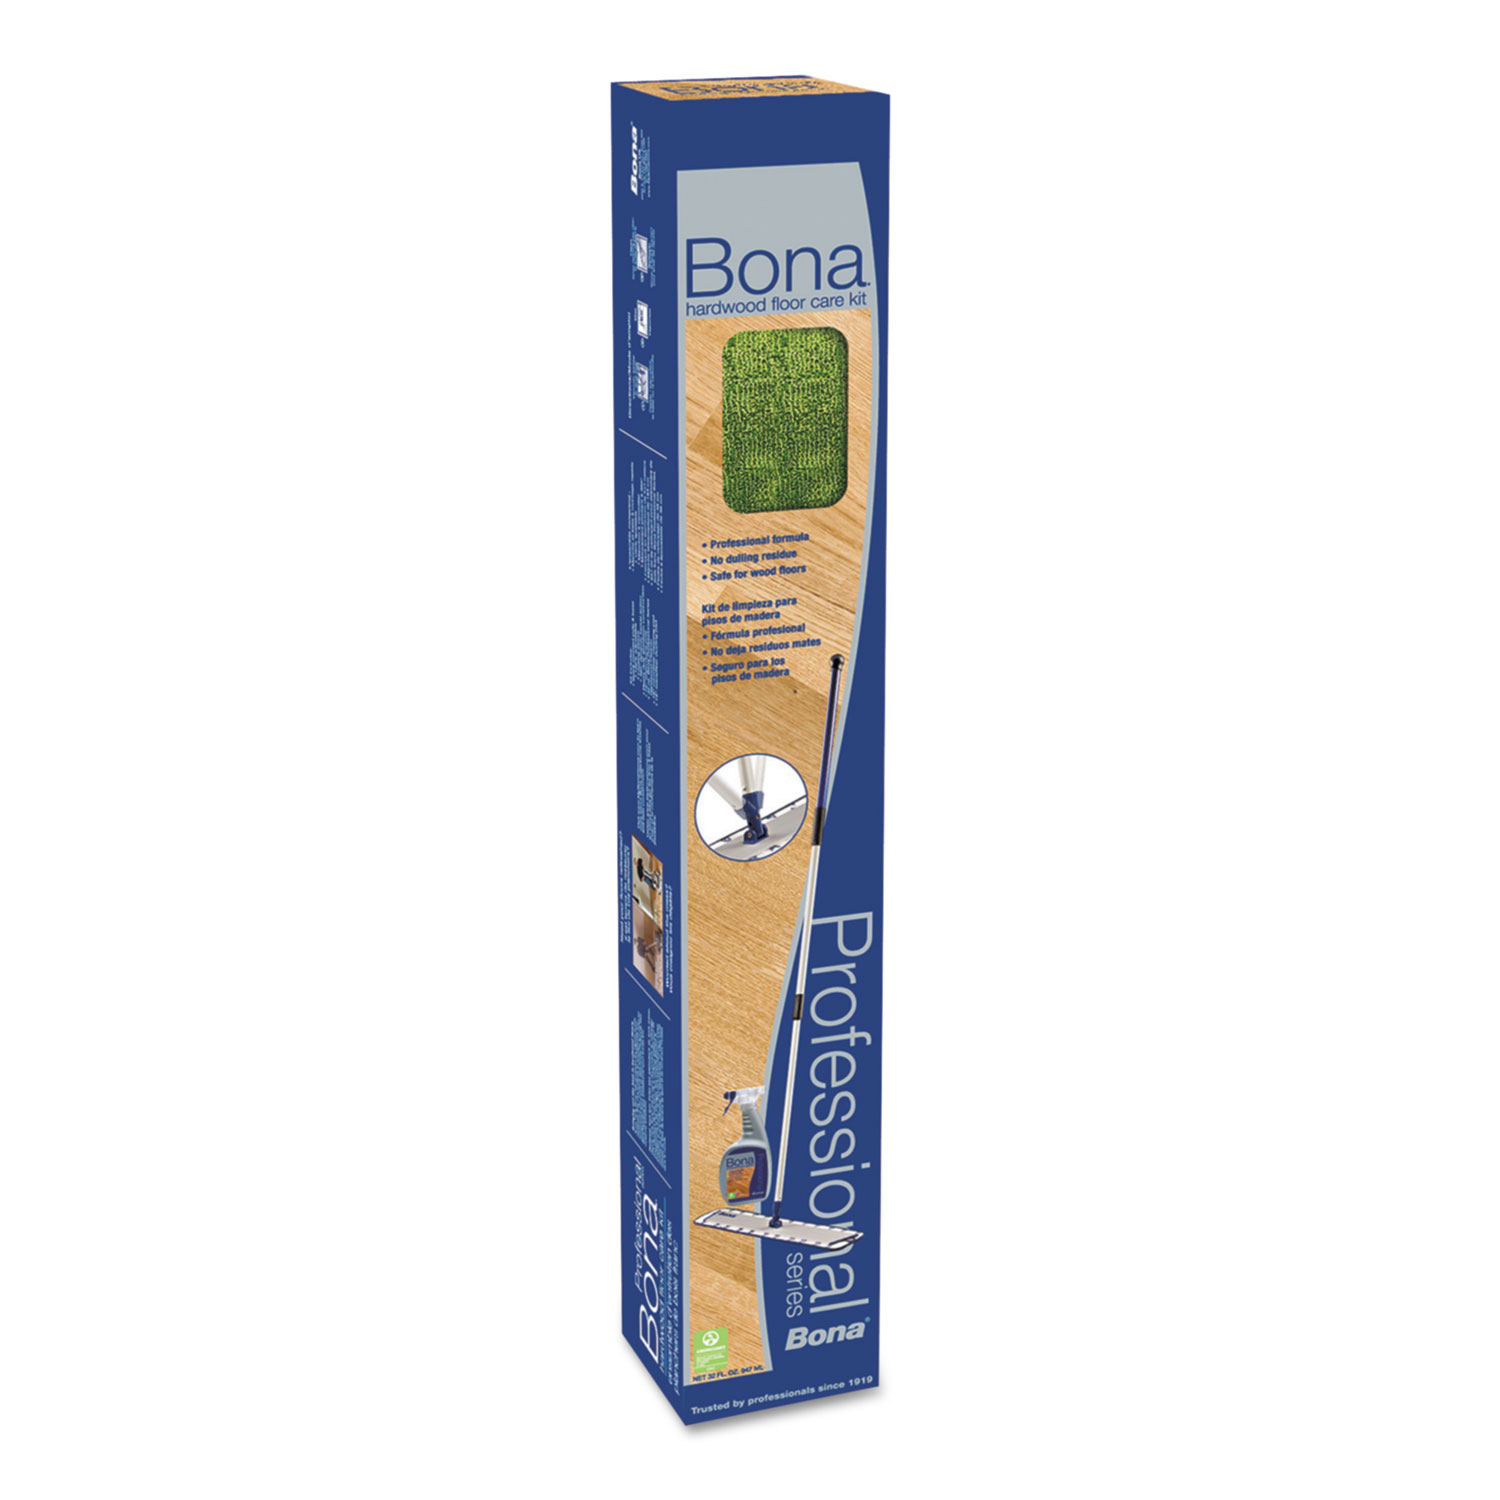  Bona WM710013399 Hardwood Floor Care Kit, 18 Head, 72 Handle, Blue (BNAWM710013399) 